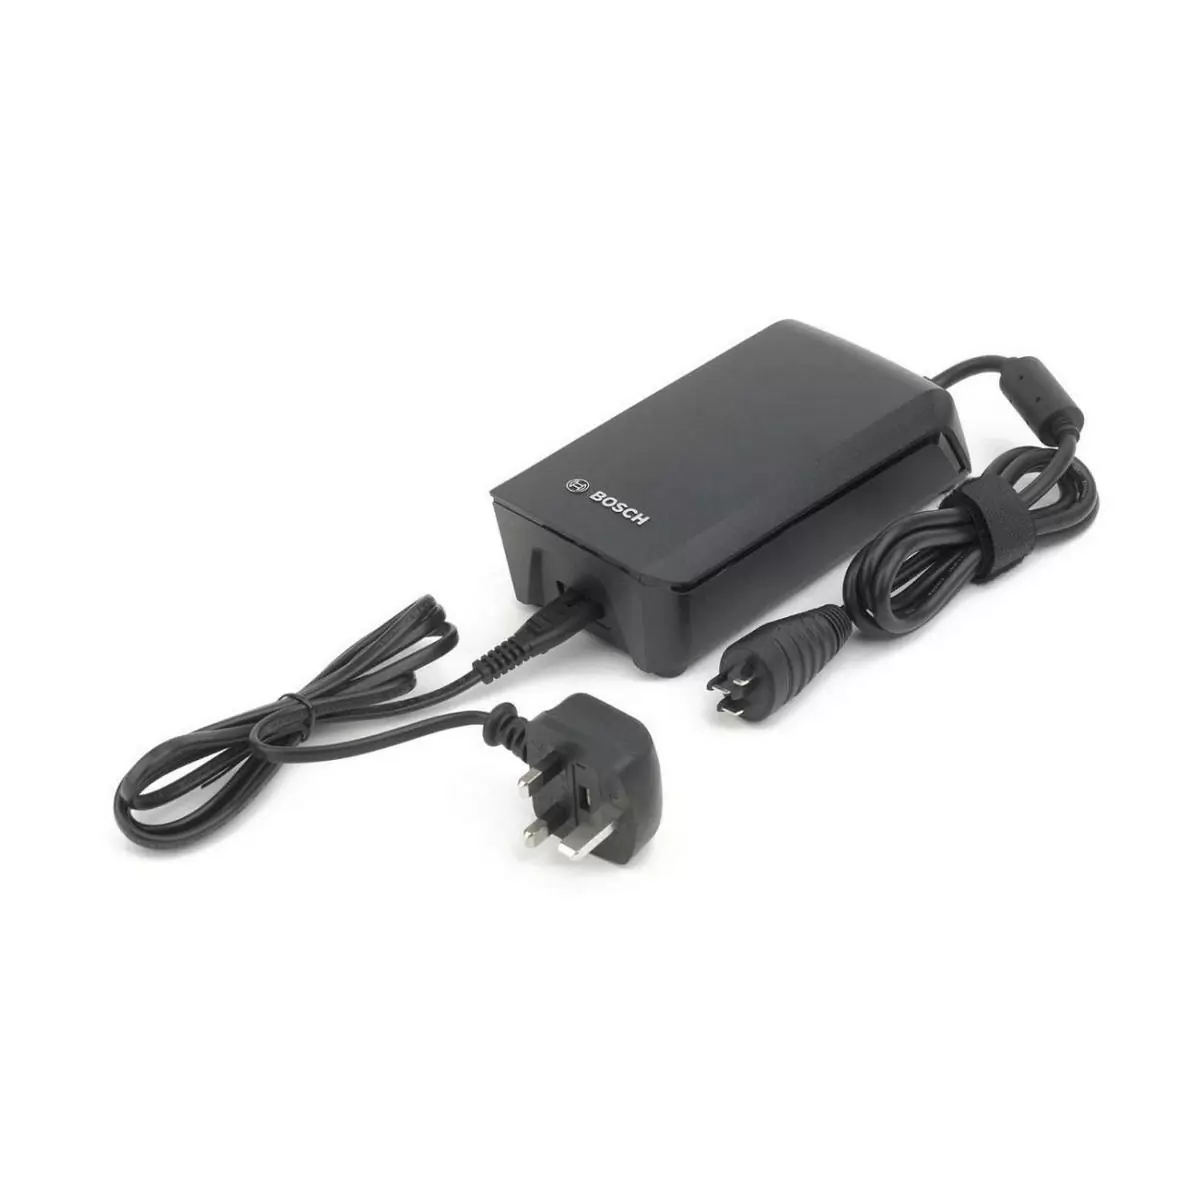 Carregador de bateria 6a cabo de alimentação fastcharger uk 2019 - image